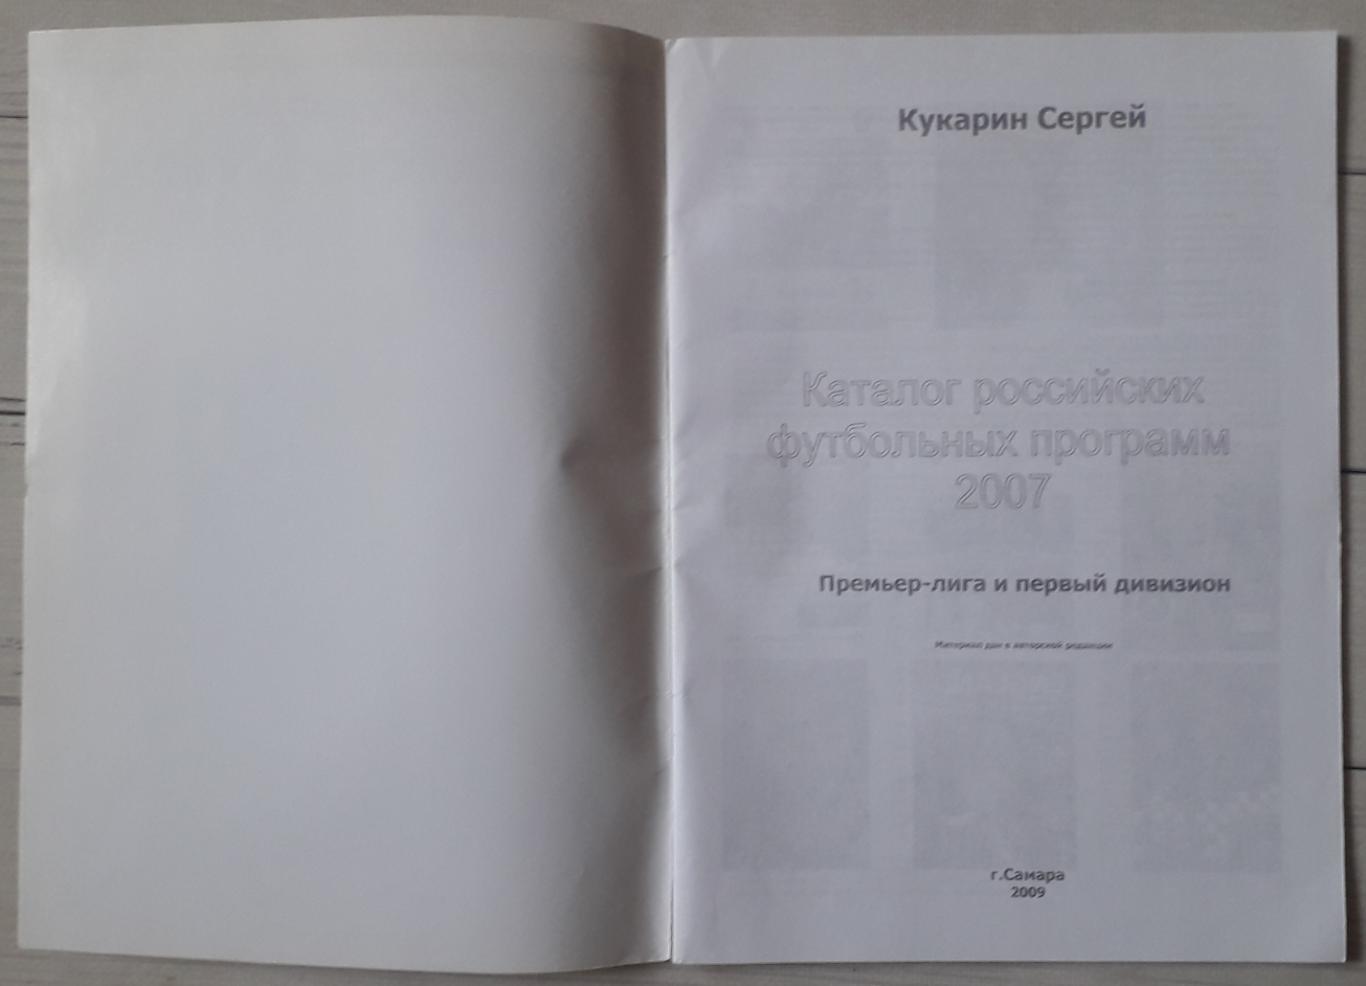 Кукарин - Каталог российских футбольных программ 2007 1